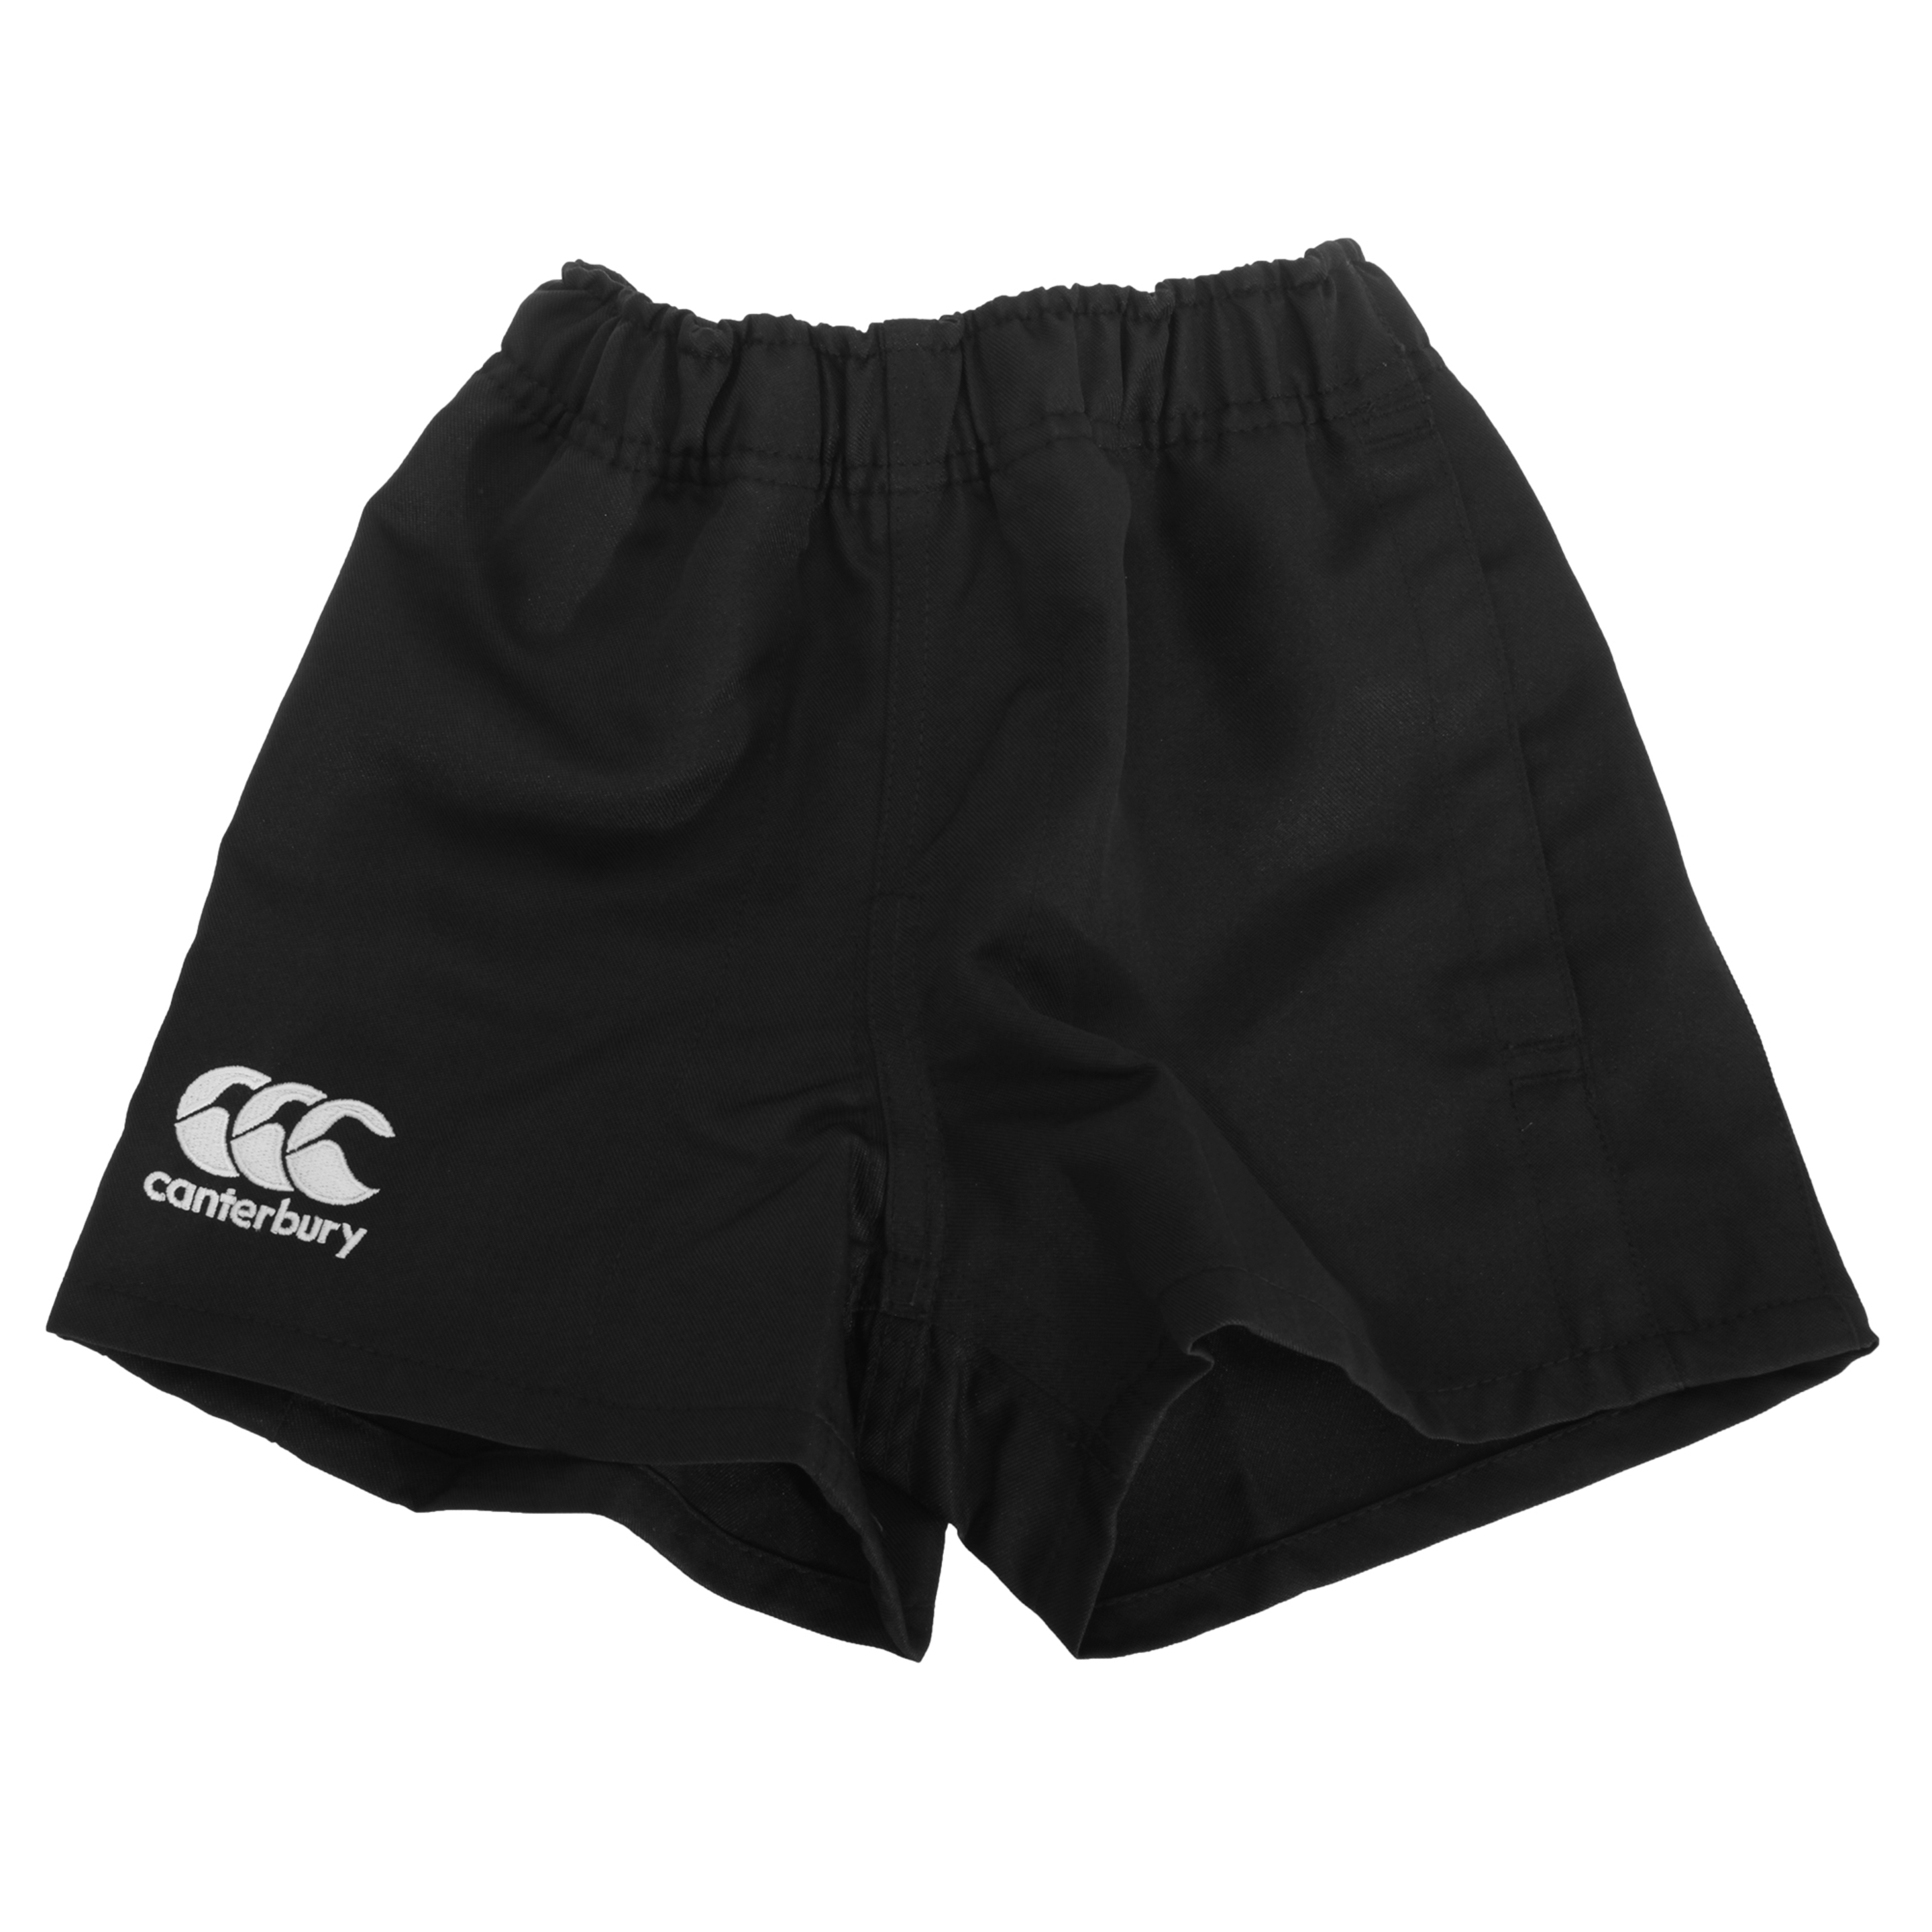 Canterbury - Pantalones Cortos De Deporte Elásticos Modelo Professional - Negro  MKP